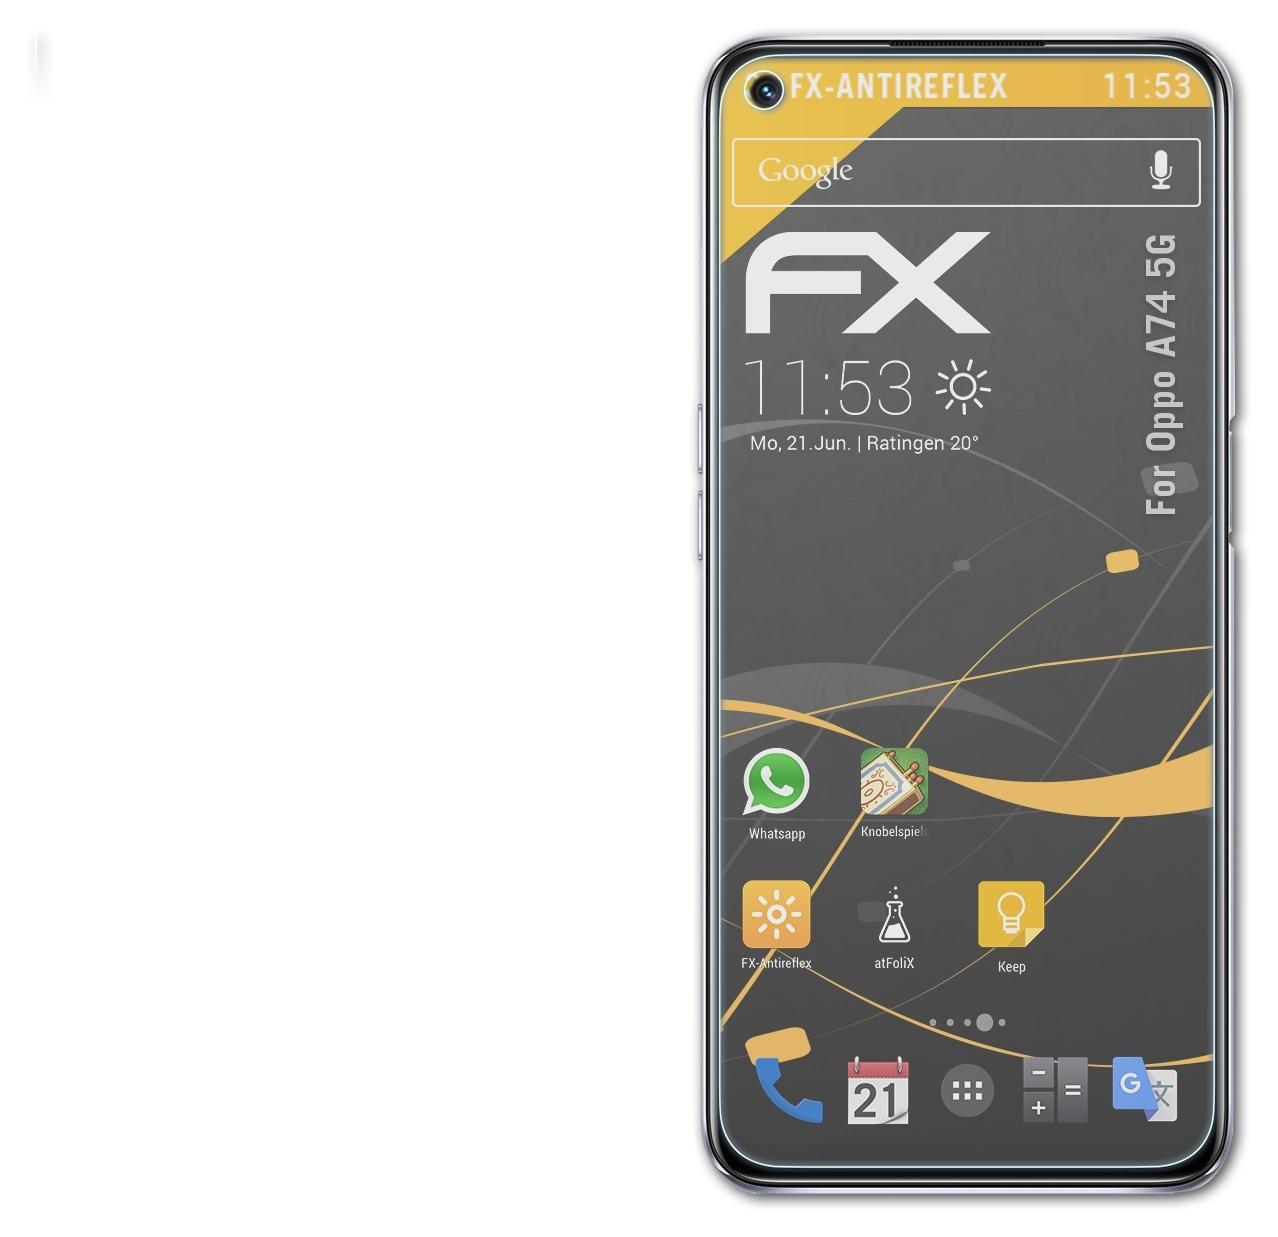 Oppo FX-Antireflex Displayschutz(für 3x 5G) ATFOLIX A74